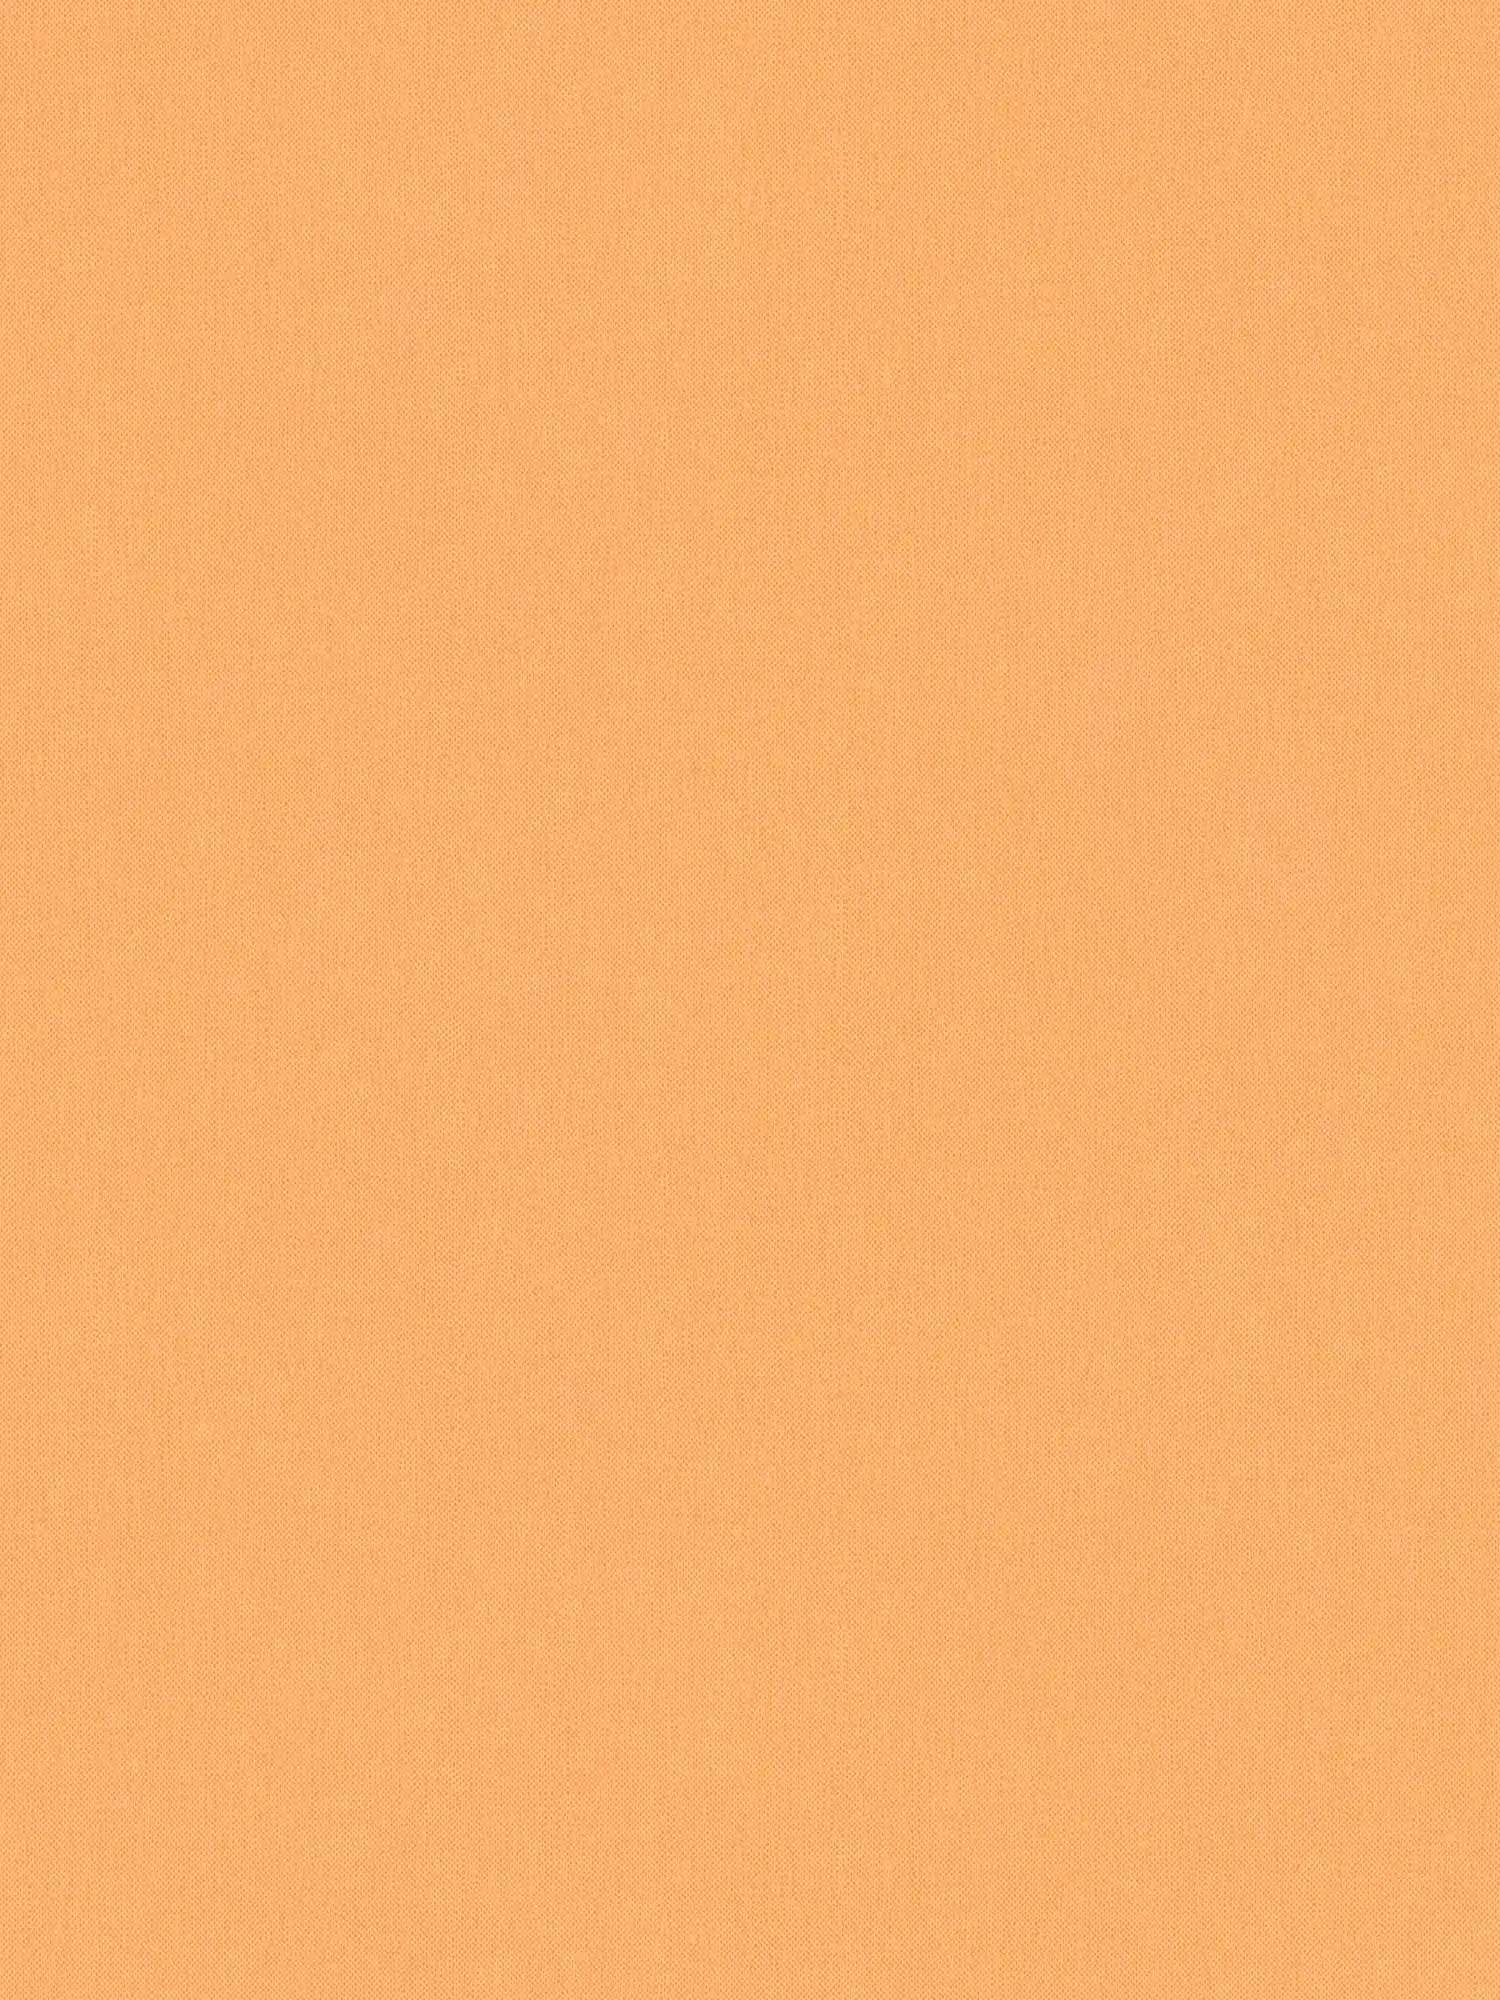 papel pintado naranja pastel y mate con estructura de aspecto de lino - naranja
